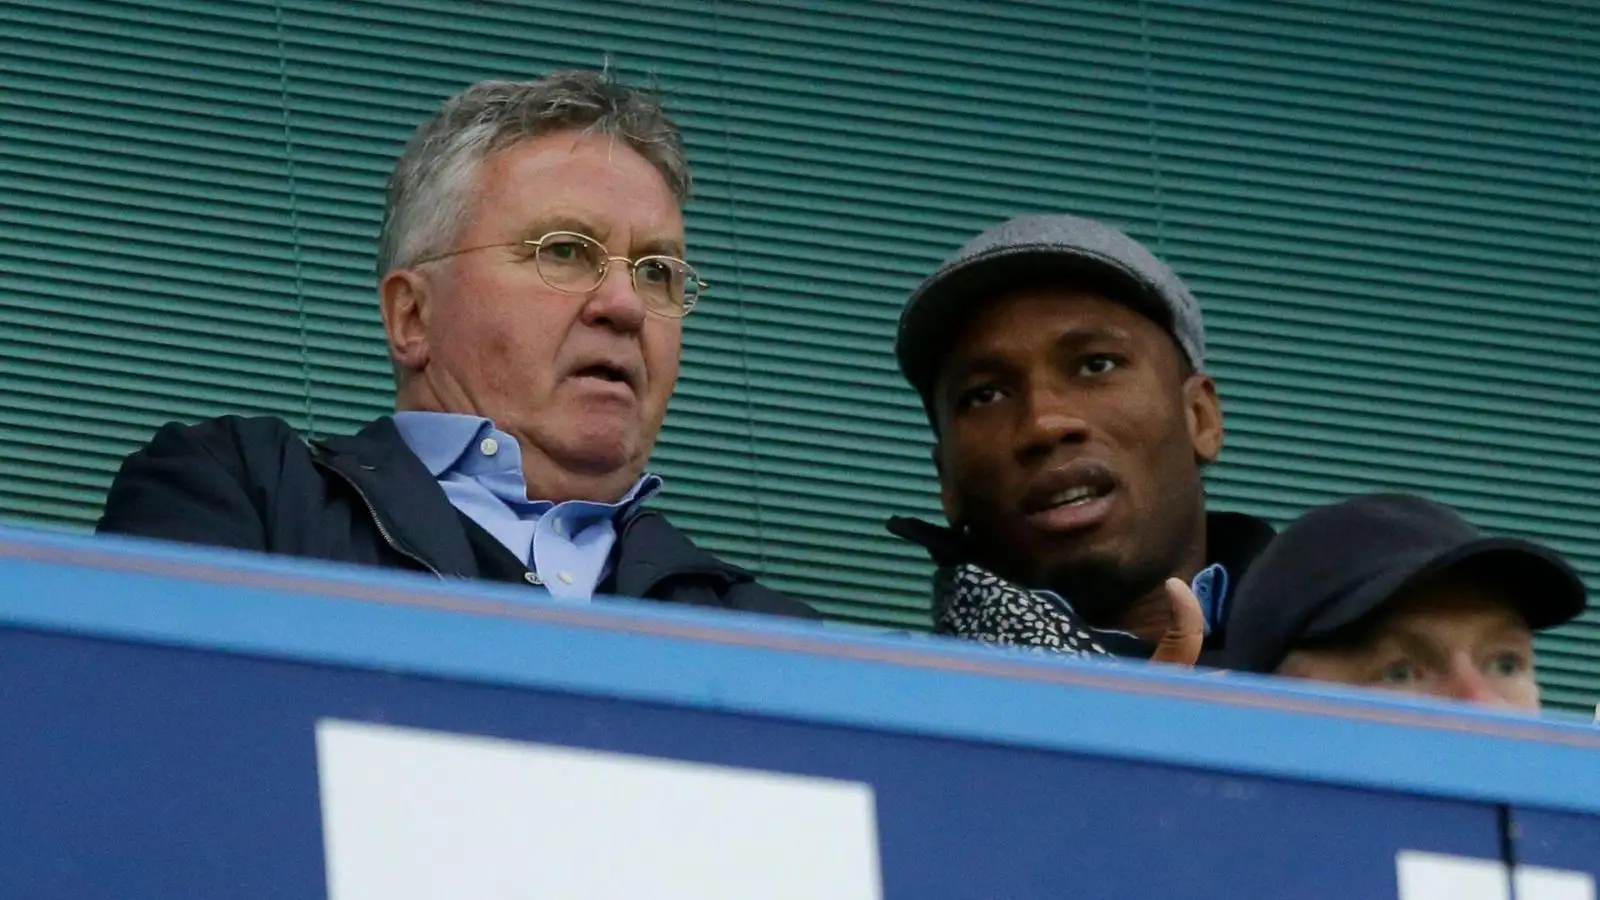 Chelsea legend Didier Drogba speaks to Gus Hiddink